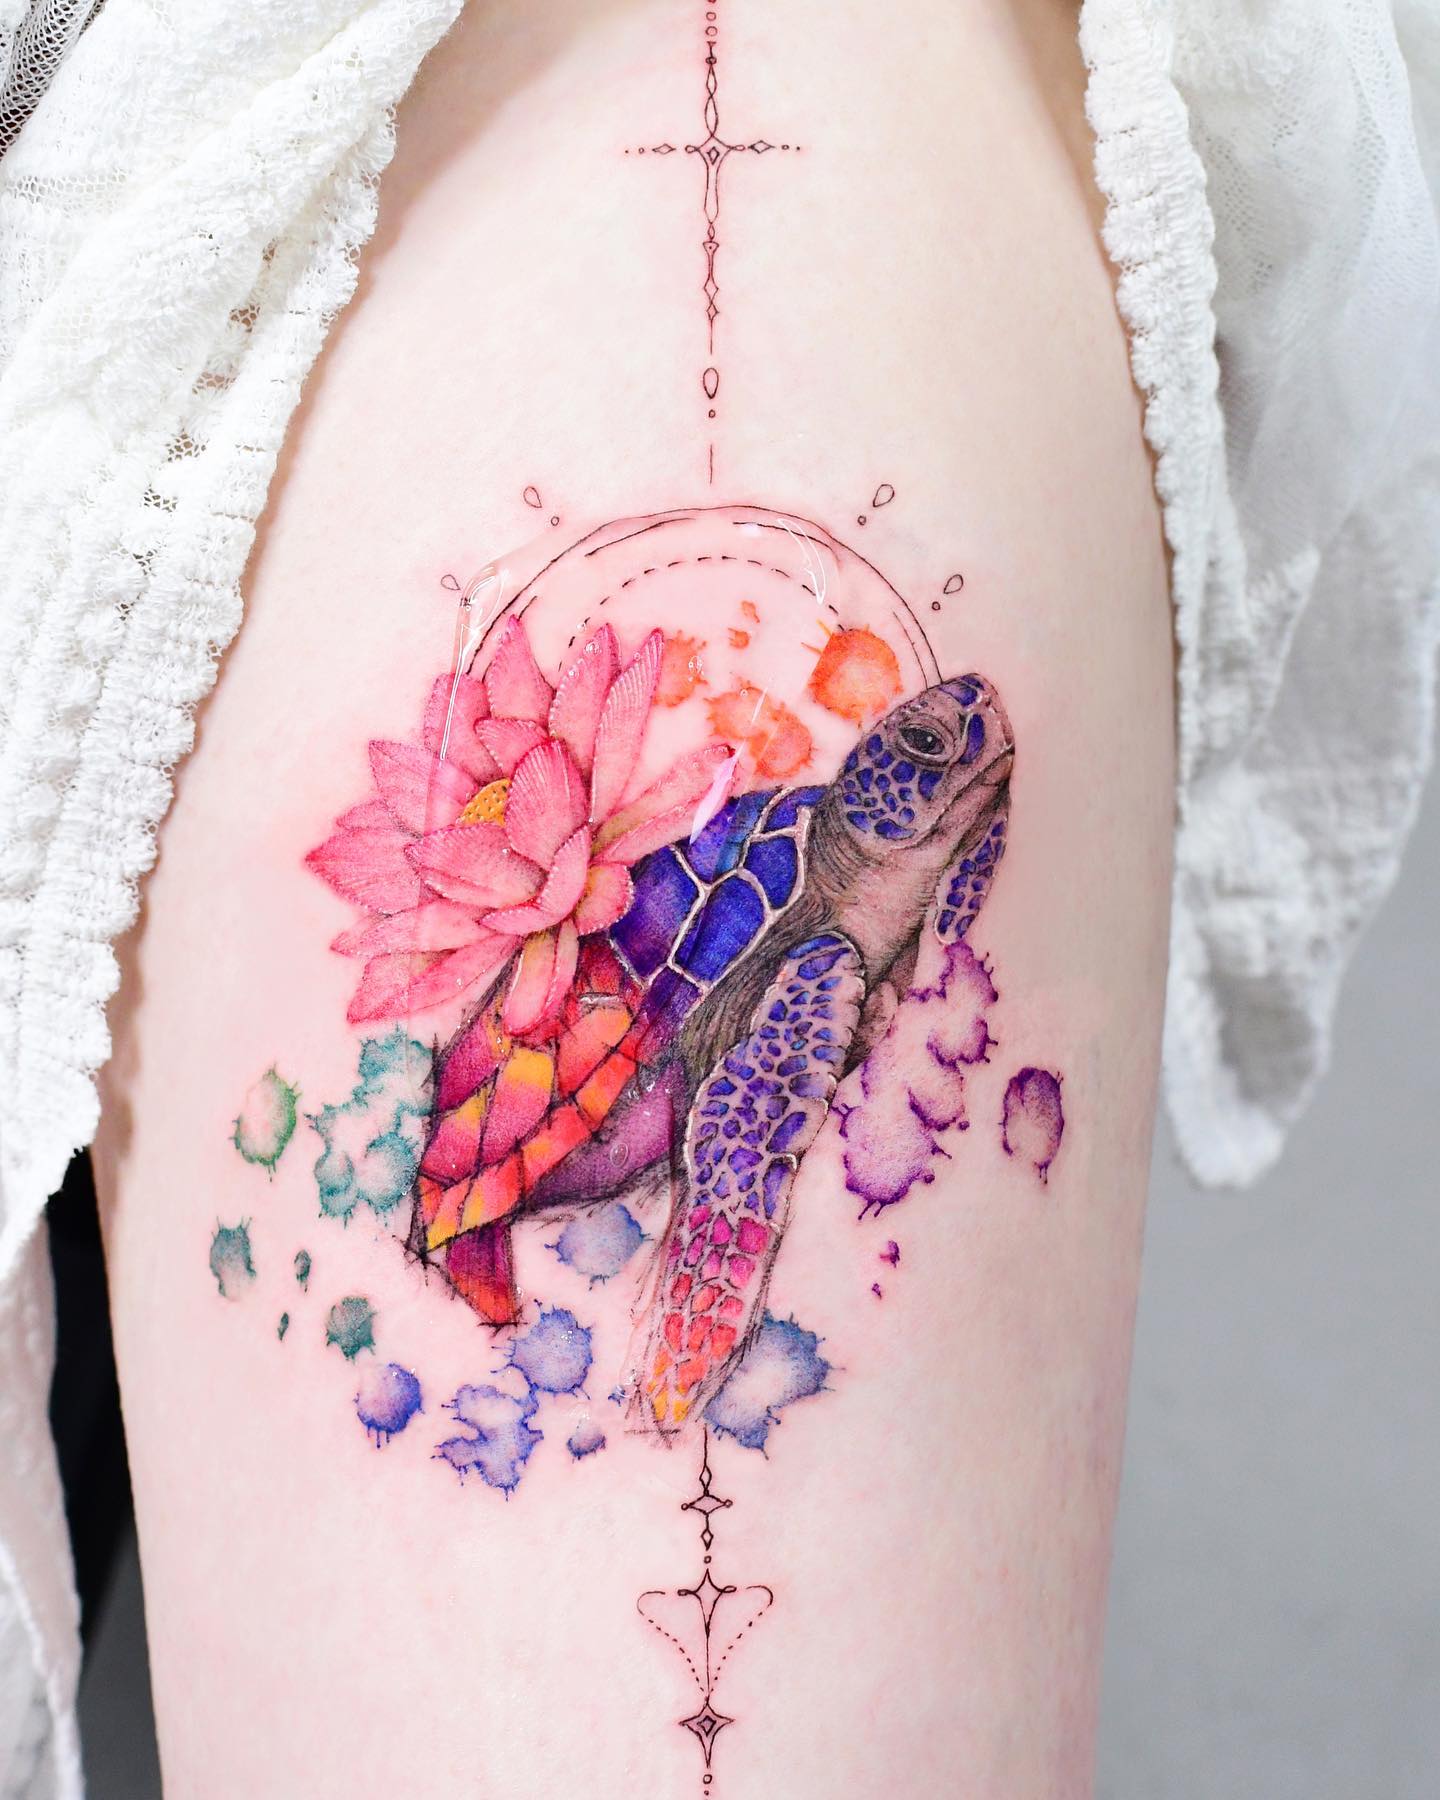 Akwarela tatuaż żółwia w jasnych kolorach niebieskim, czerwonym, różowym, fioletowym i zielonym